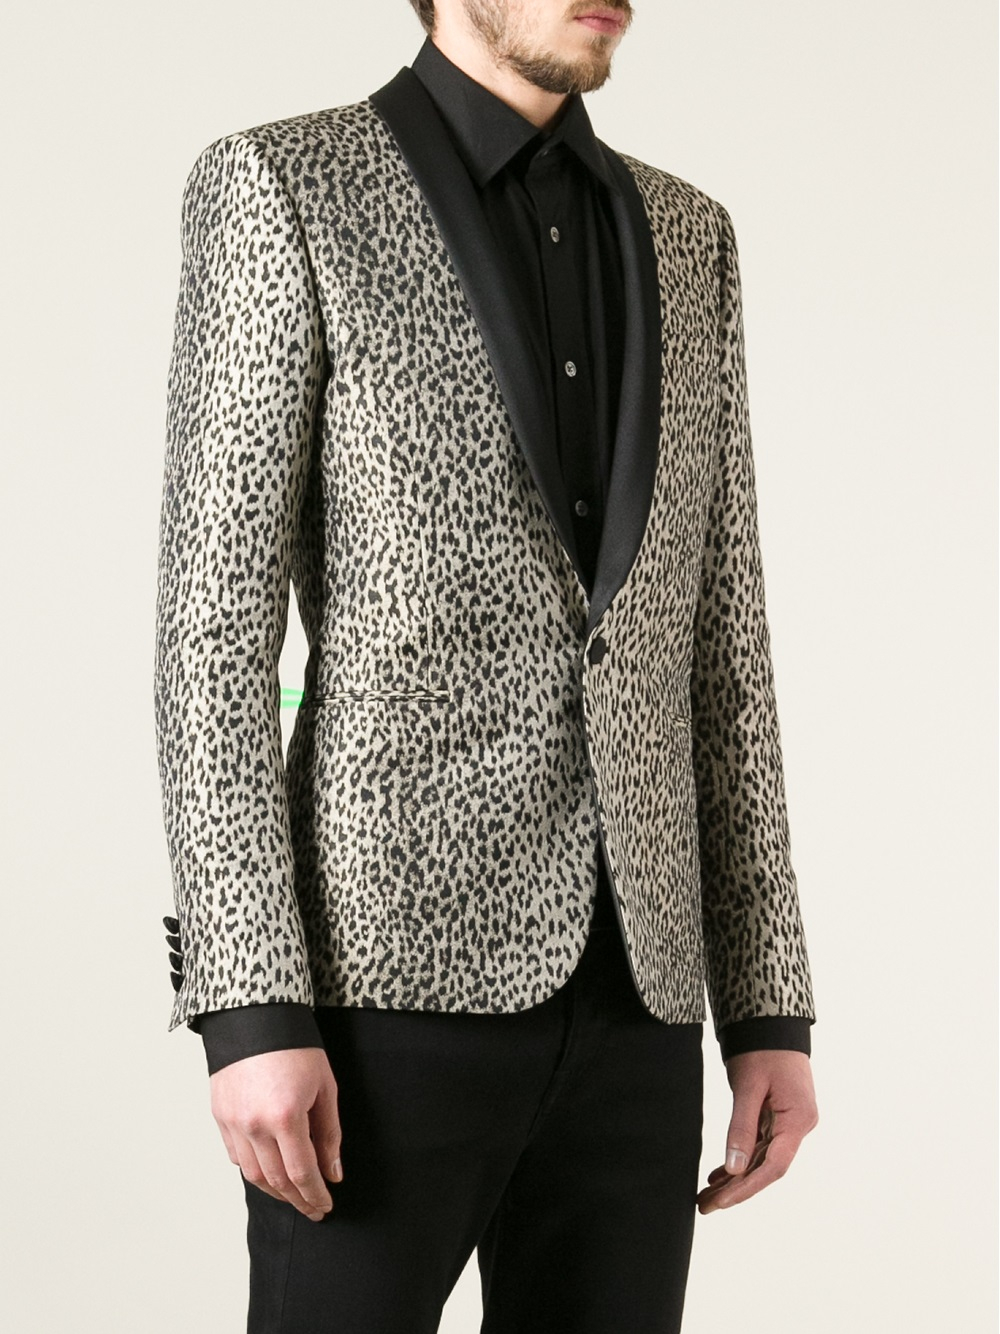 Lyst - Saint Laurent Leopard Print Blazer for Men